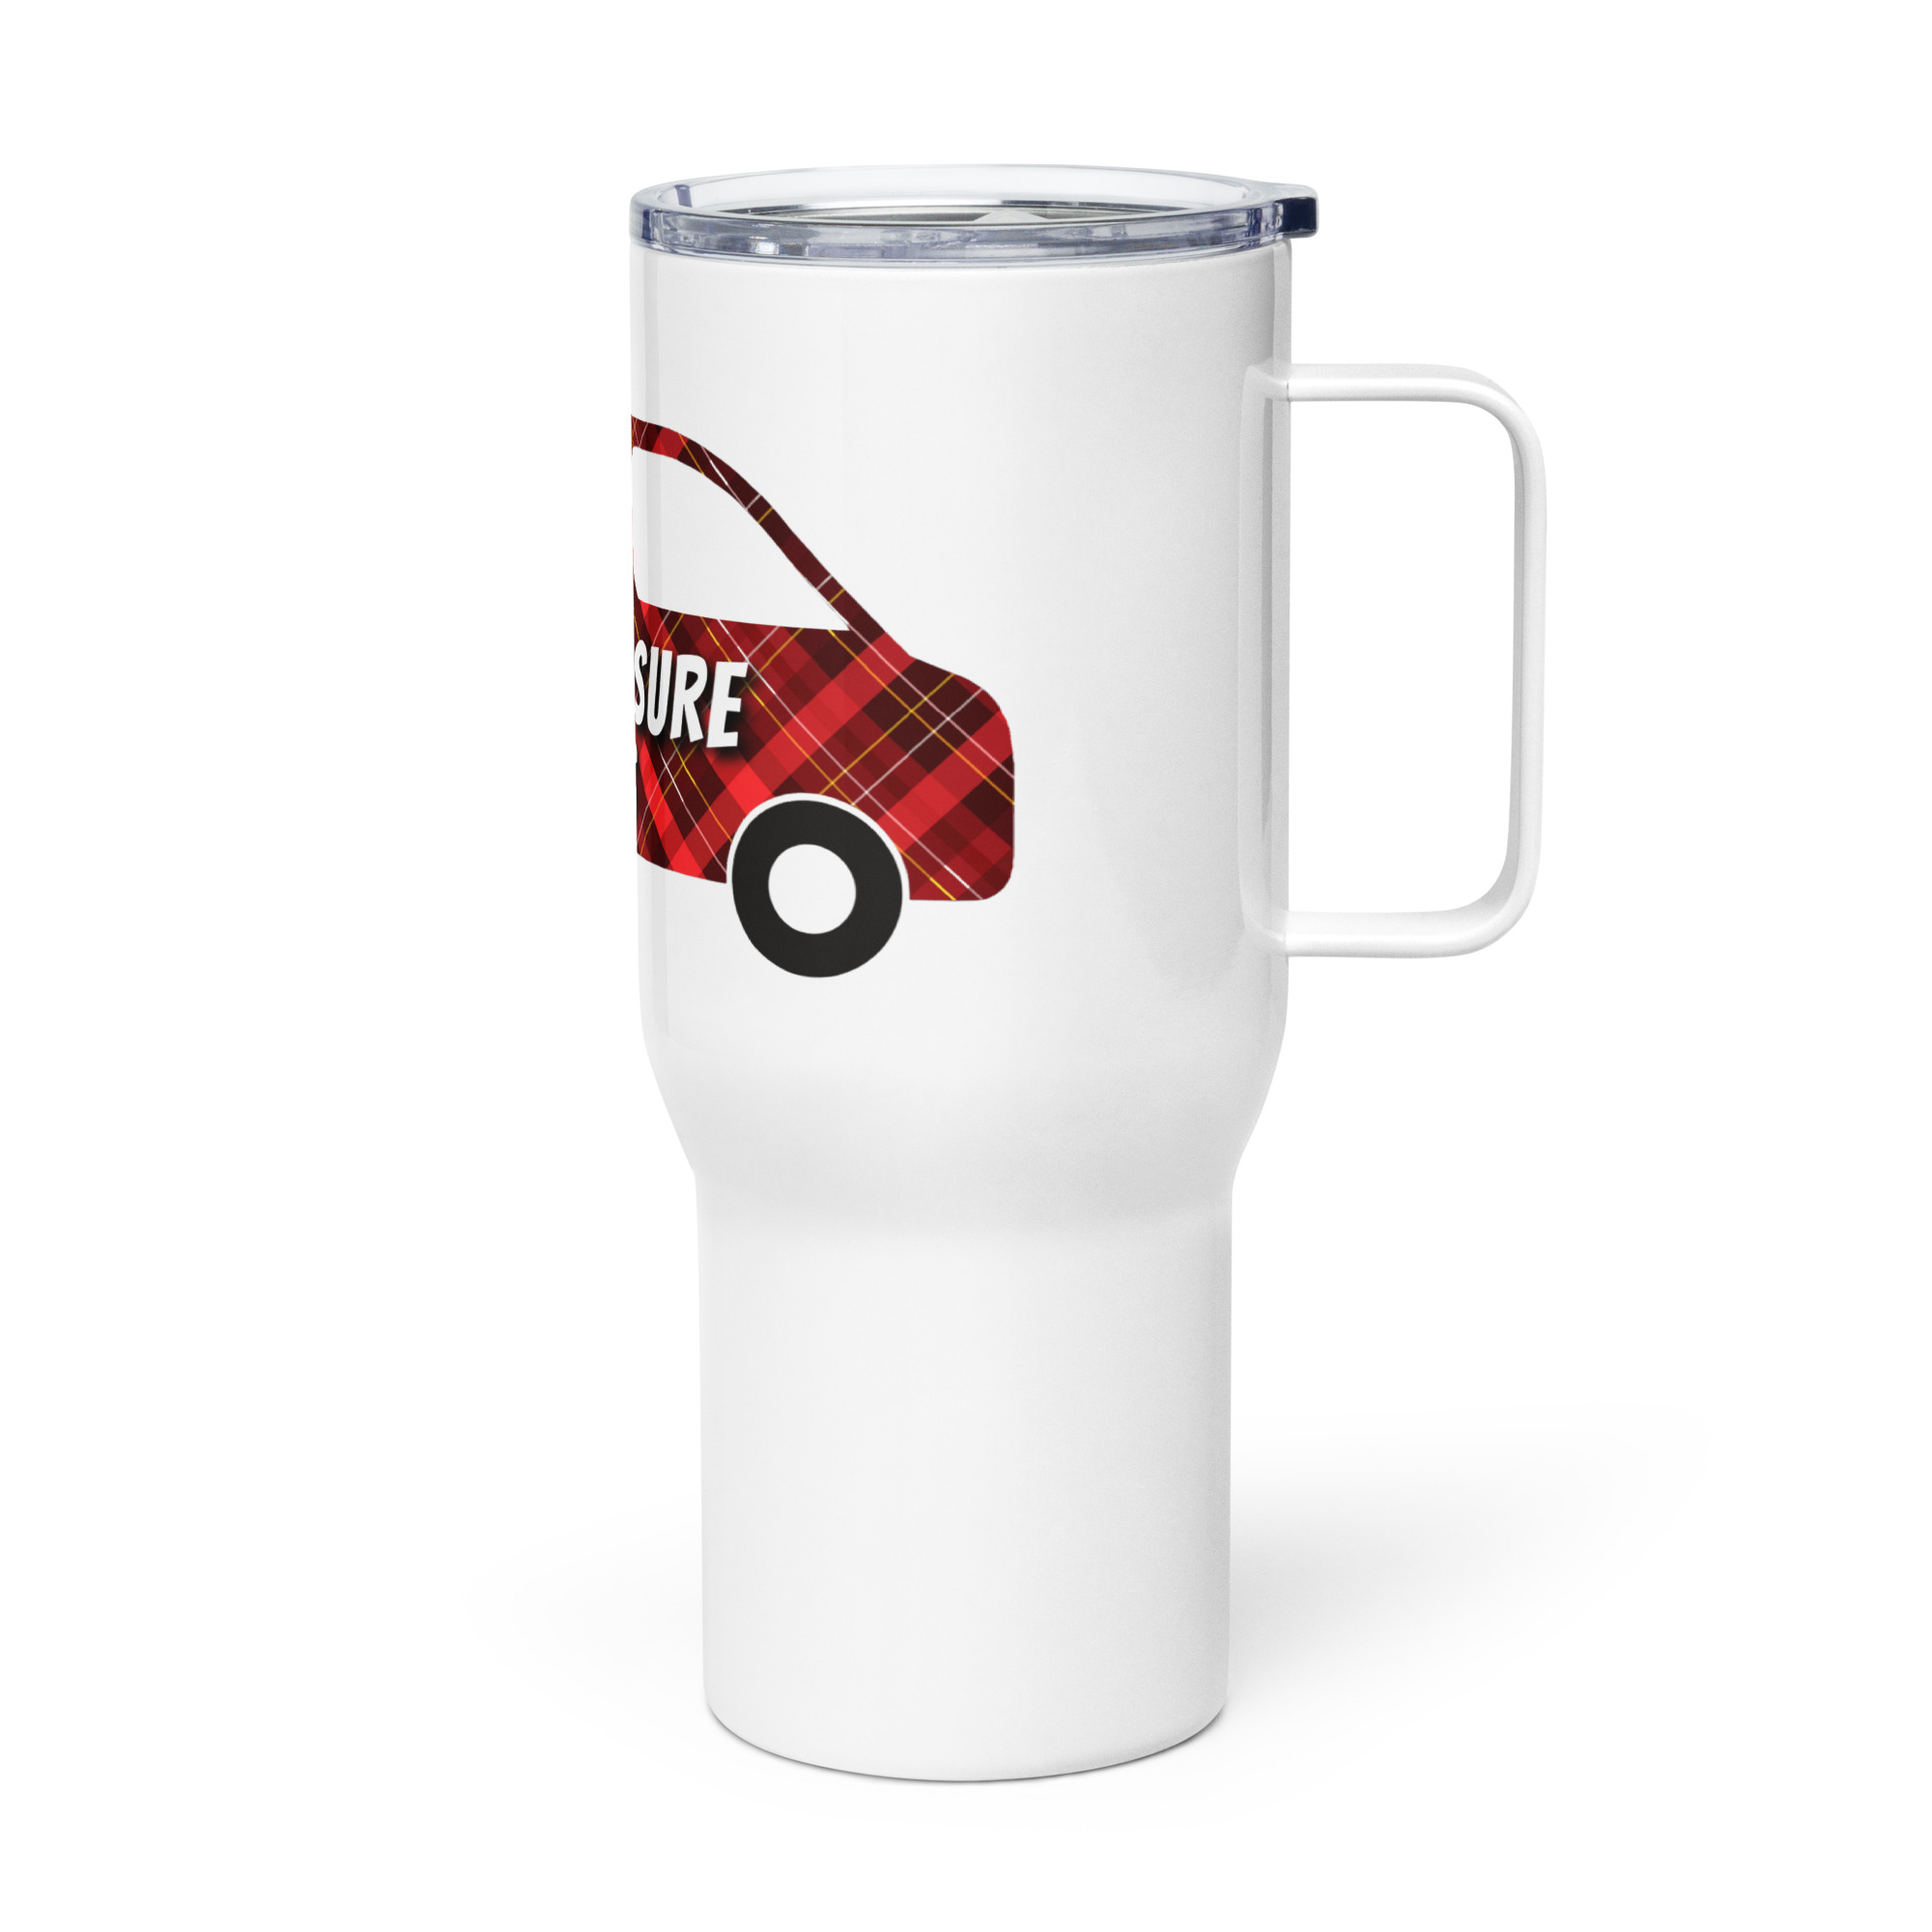 Travel mug with a handle #1